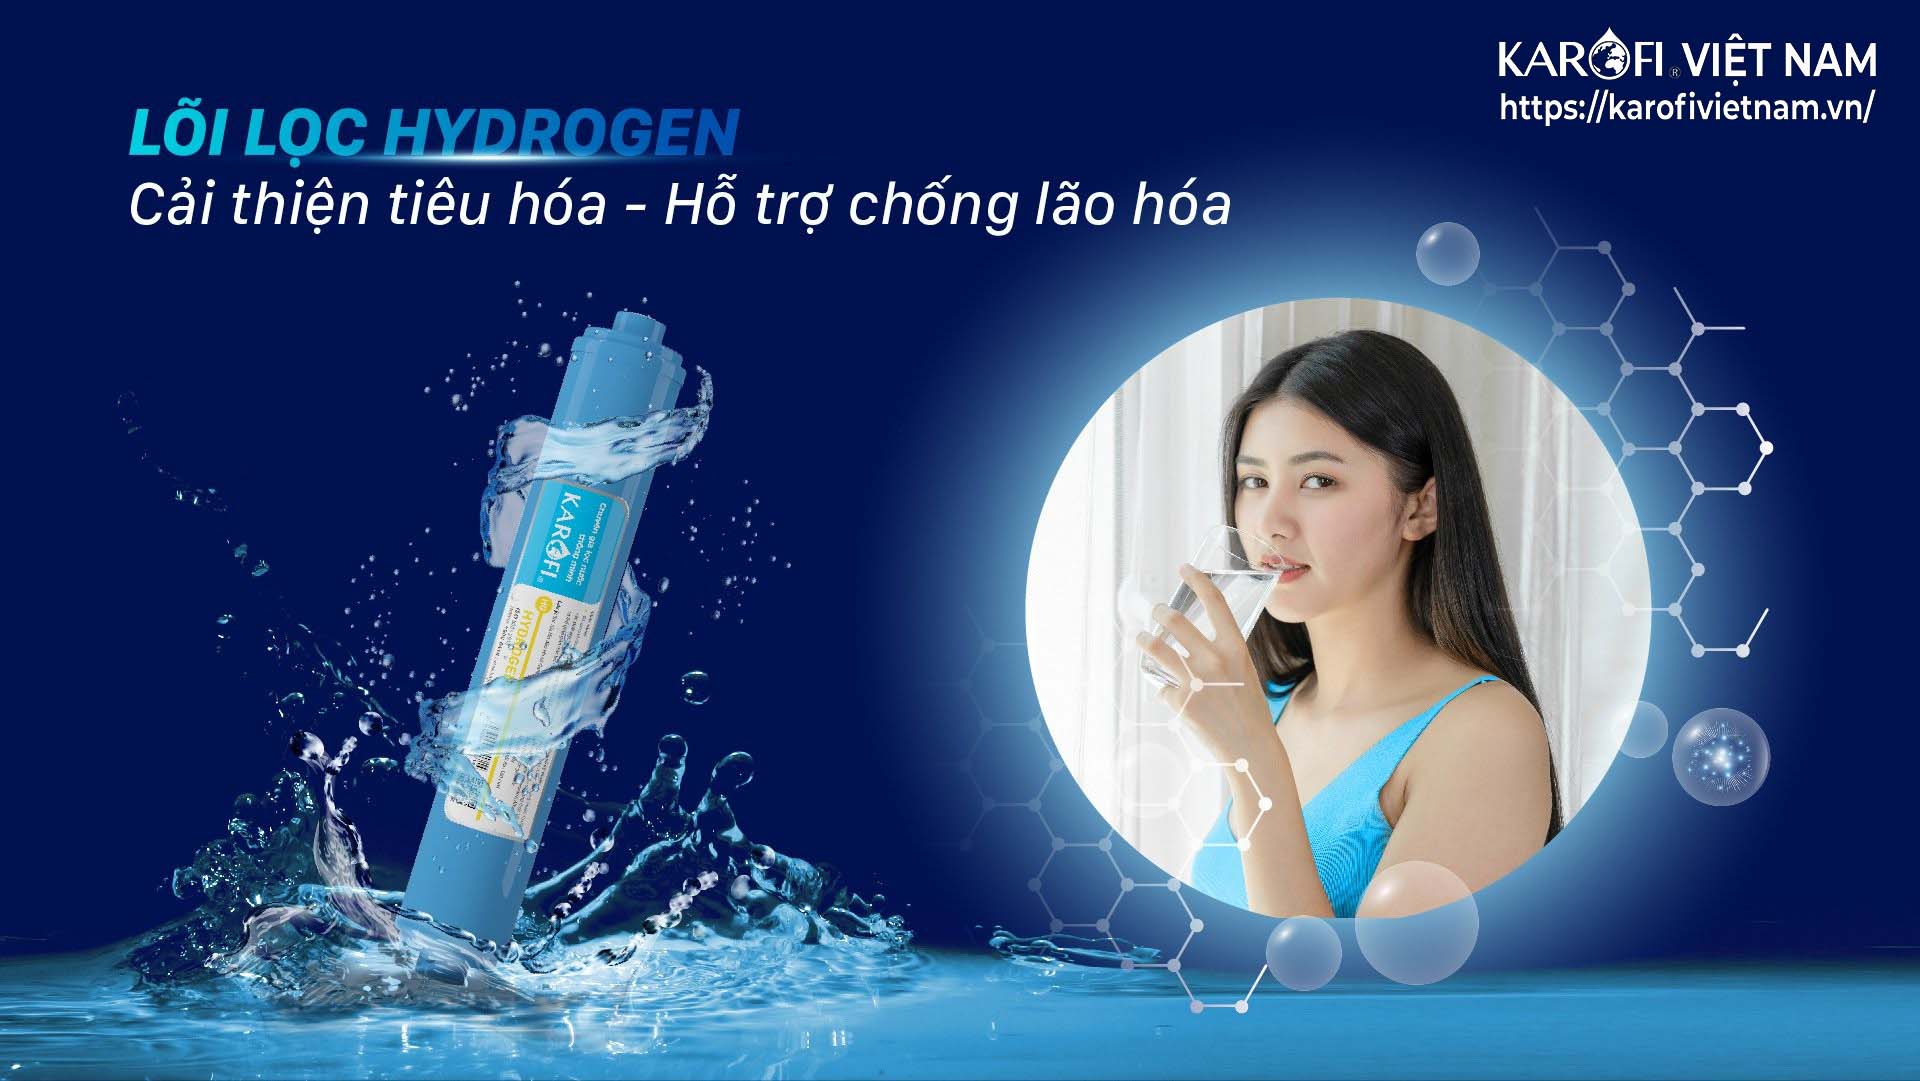 Karofivietnam.vn Lõi lọc Hydrogen - Cải thiện tiêu hóa - Hỗ trợ chống lão hóa